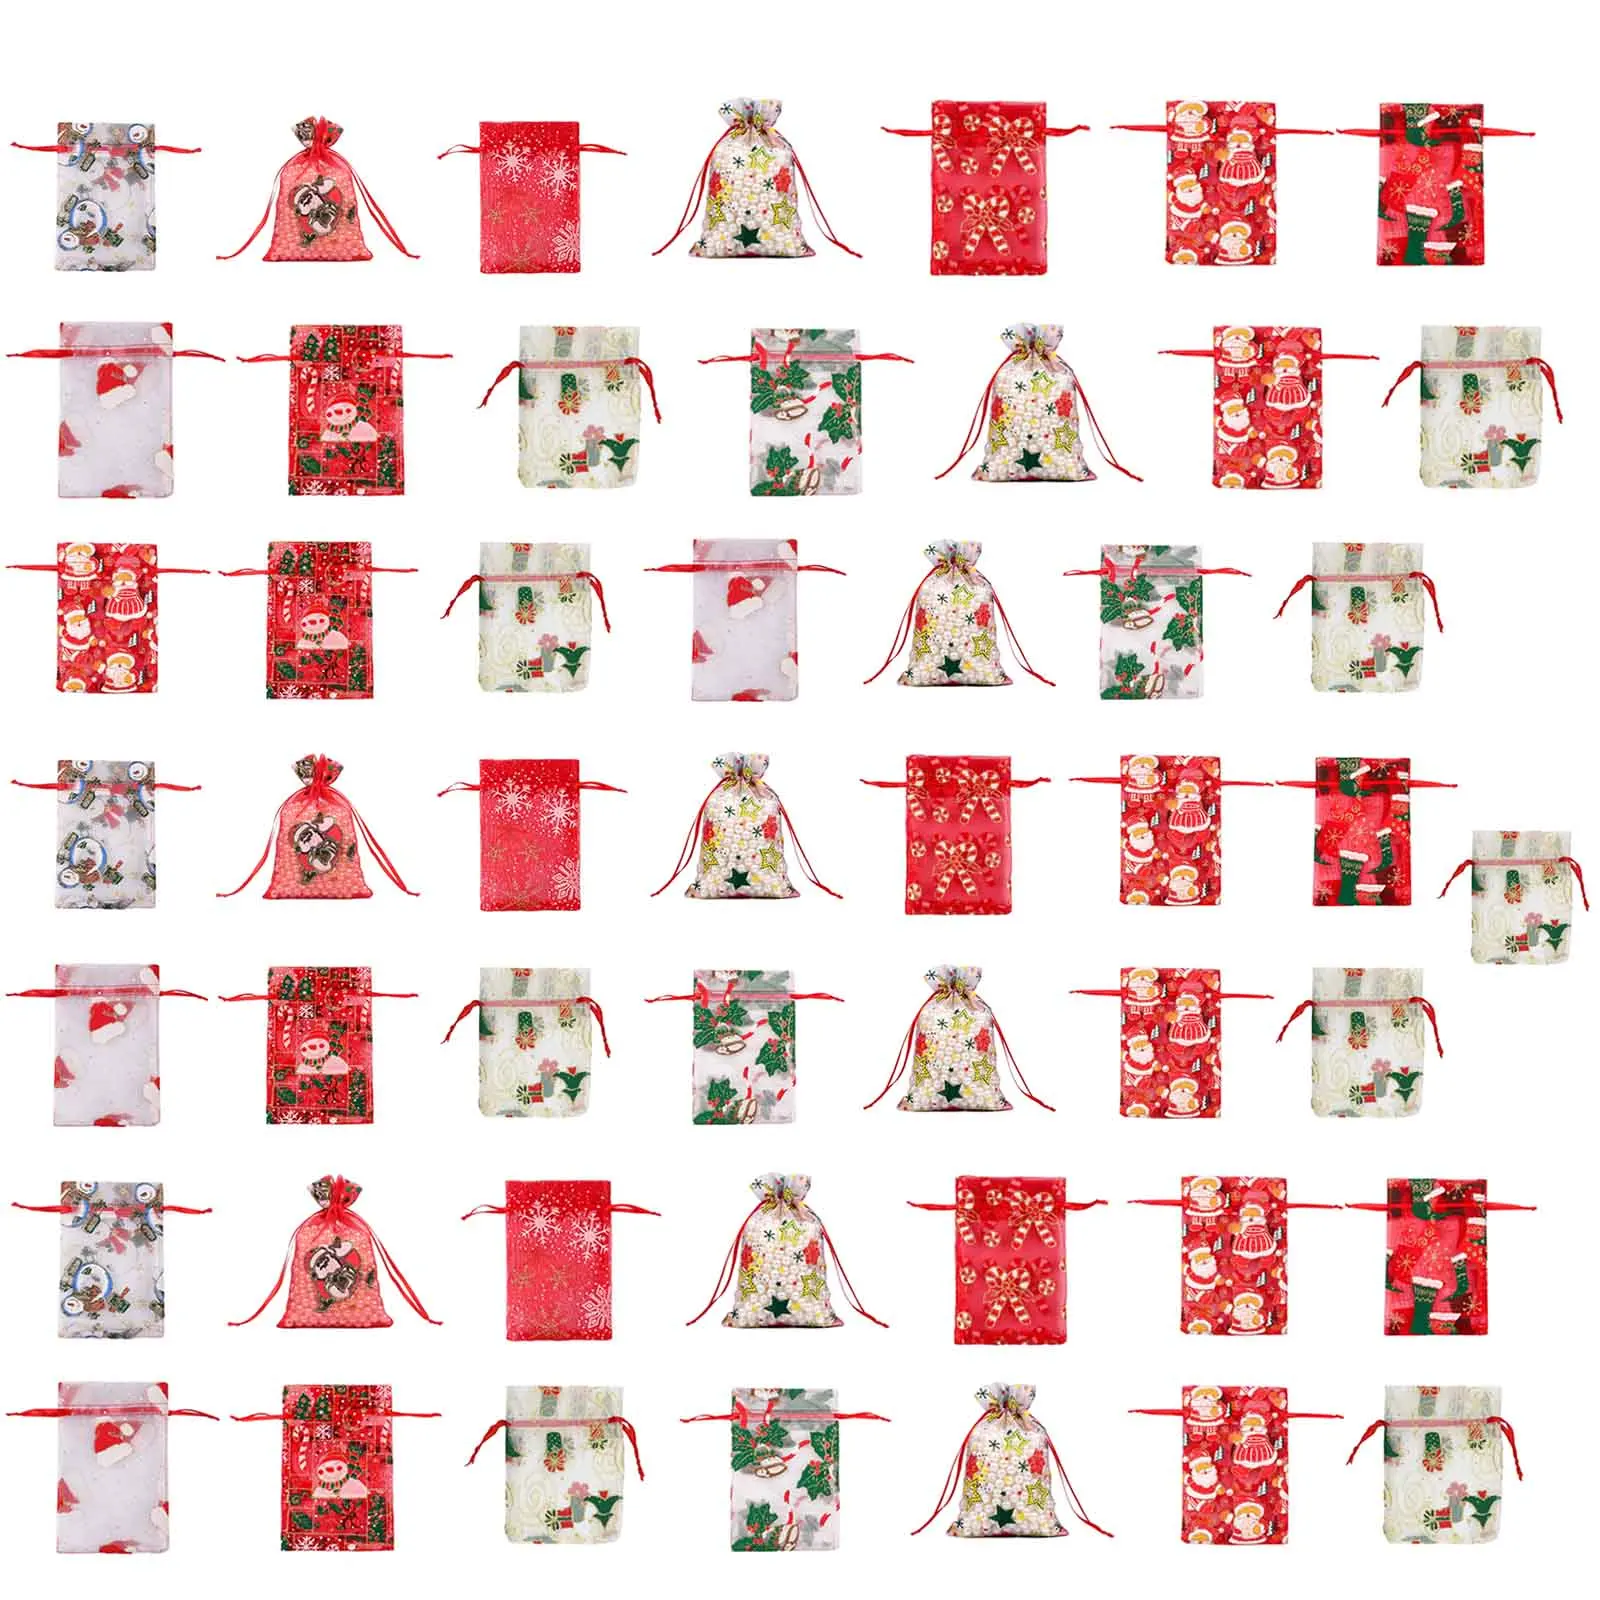 

50 шт. рождественские сумочки из органзы, рождественские сумочки на шнурке с изображением снеговика, Санта-Клауса, подарочные пакеты для кон...